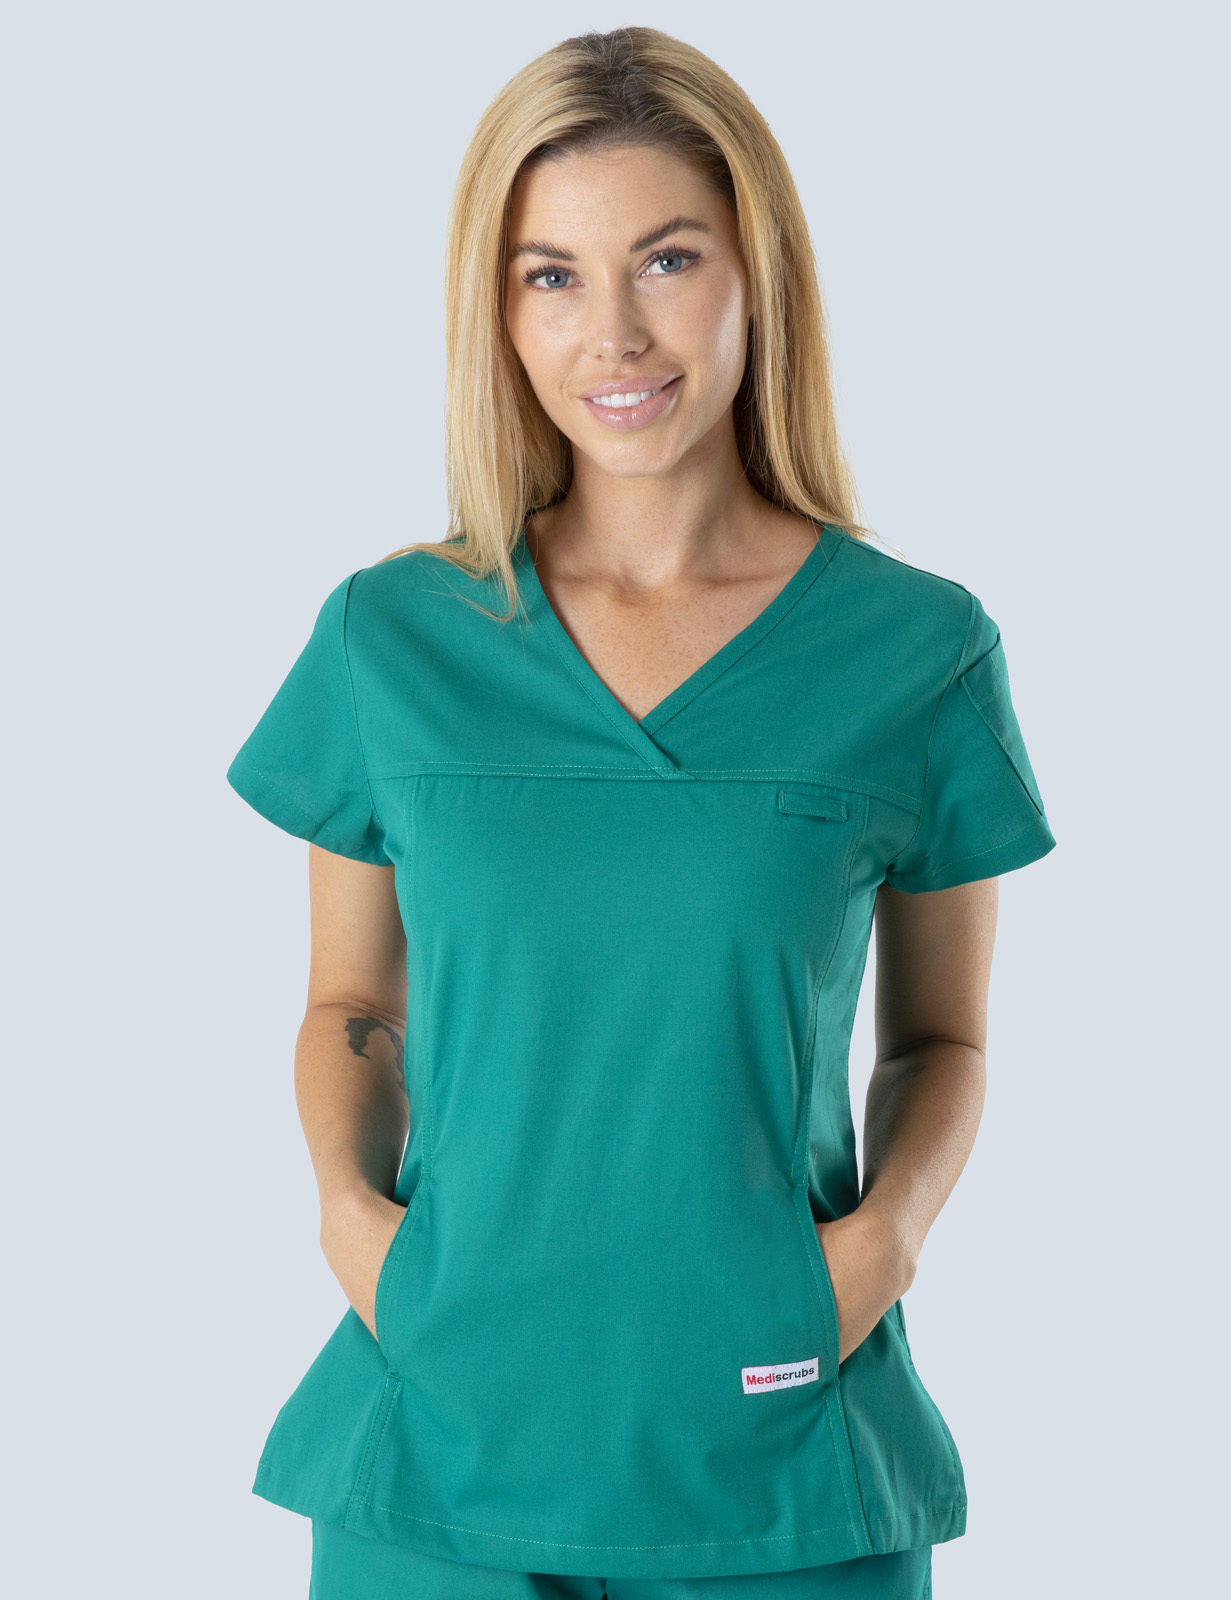 Queensland Children's Hospital Emergency Department Nurse Practitioner Uniform Top Bundle  (Women's Fit Top in Hunter incl Logos)